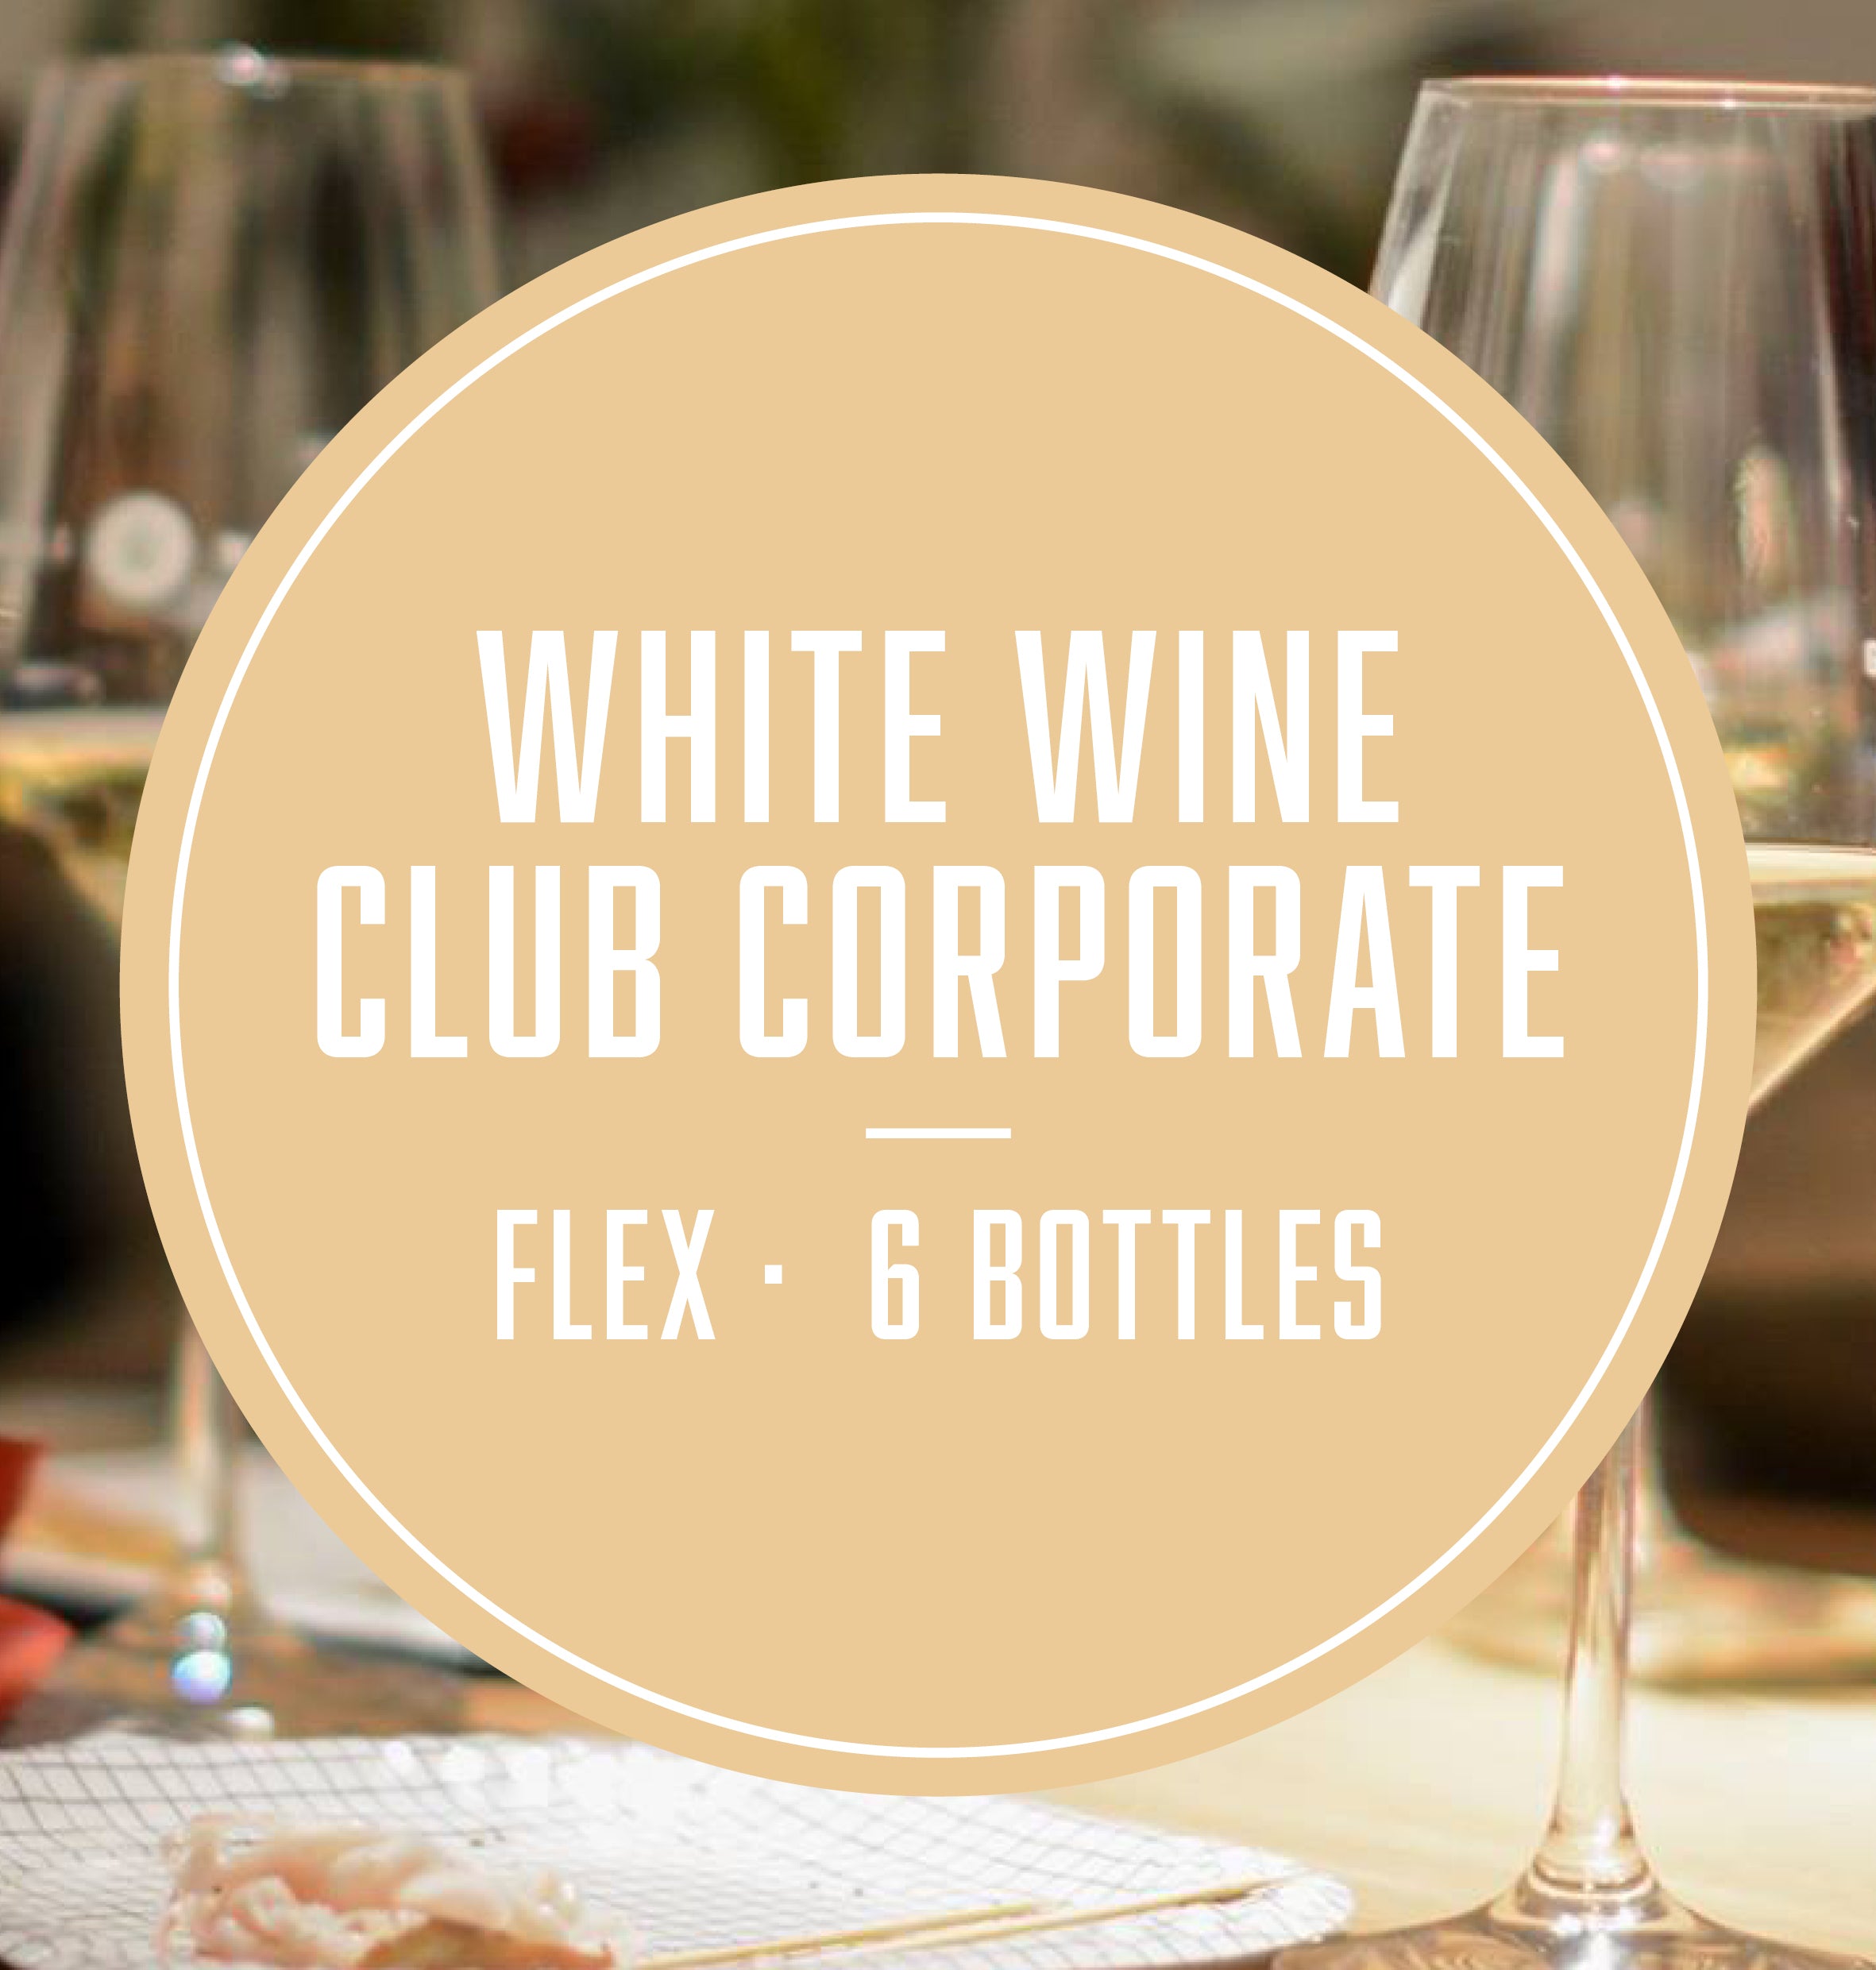 White Wine Lover - Flex (6 Bottles Office)